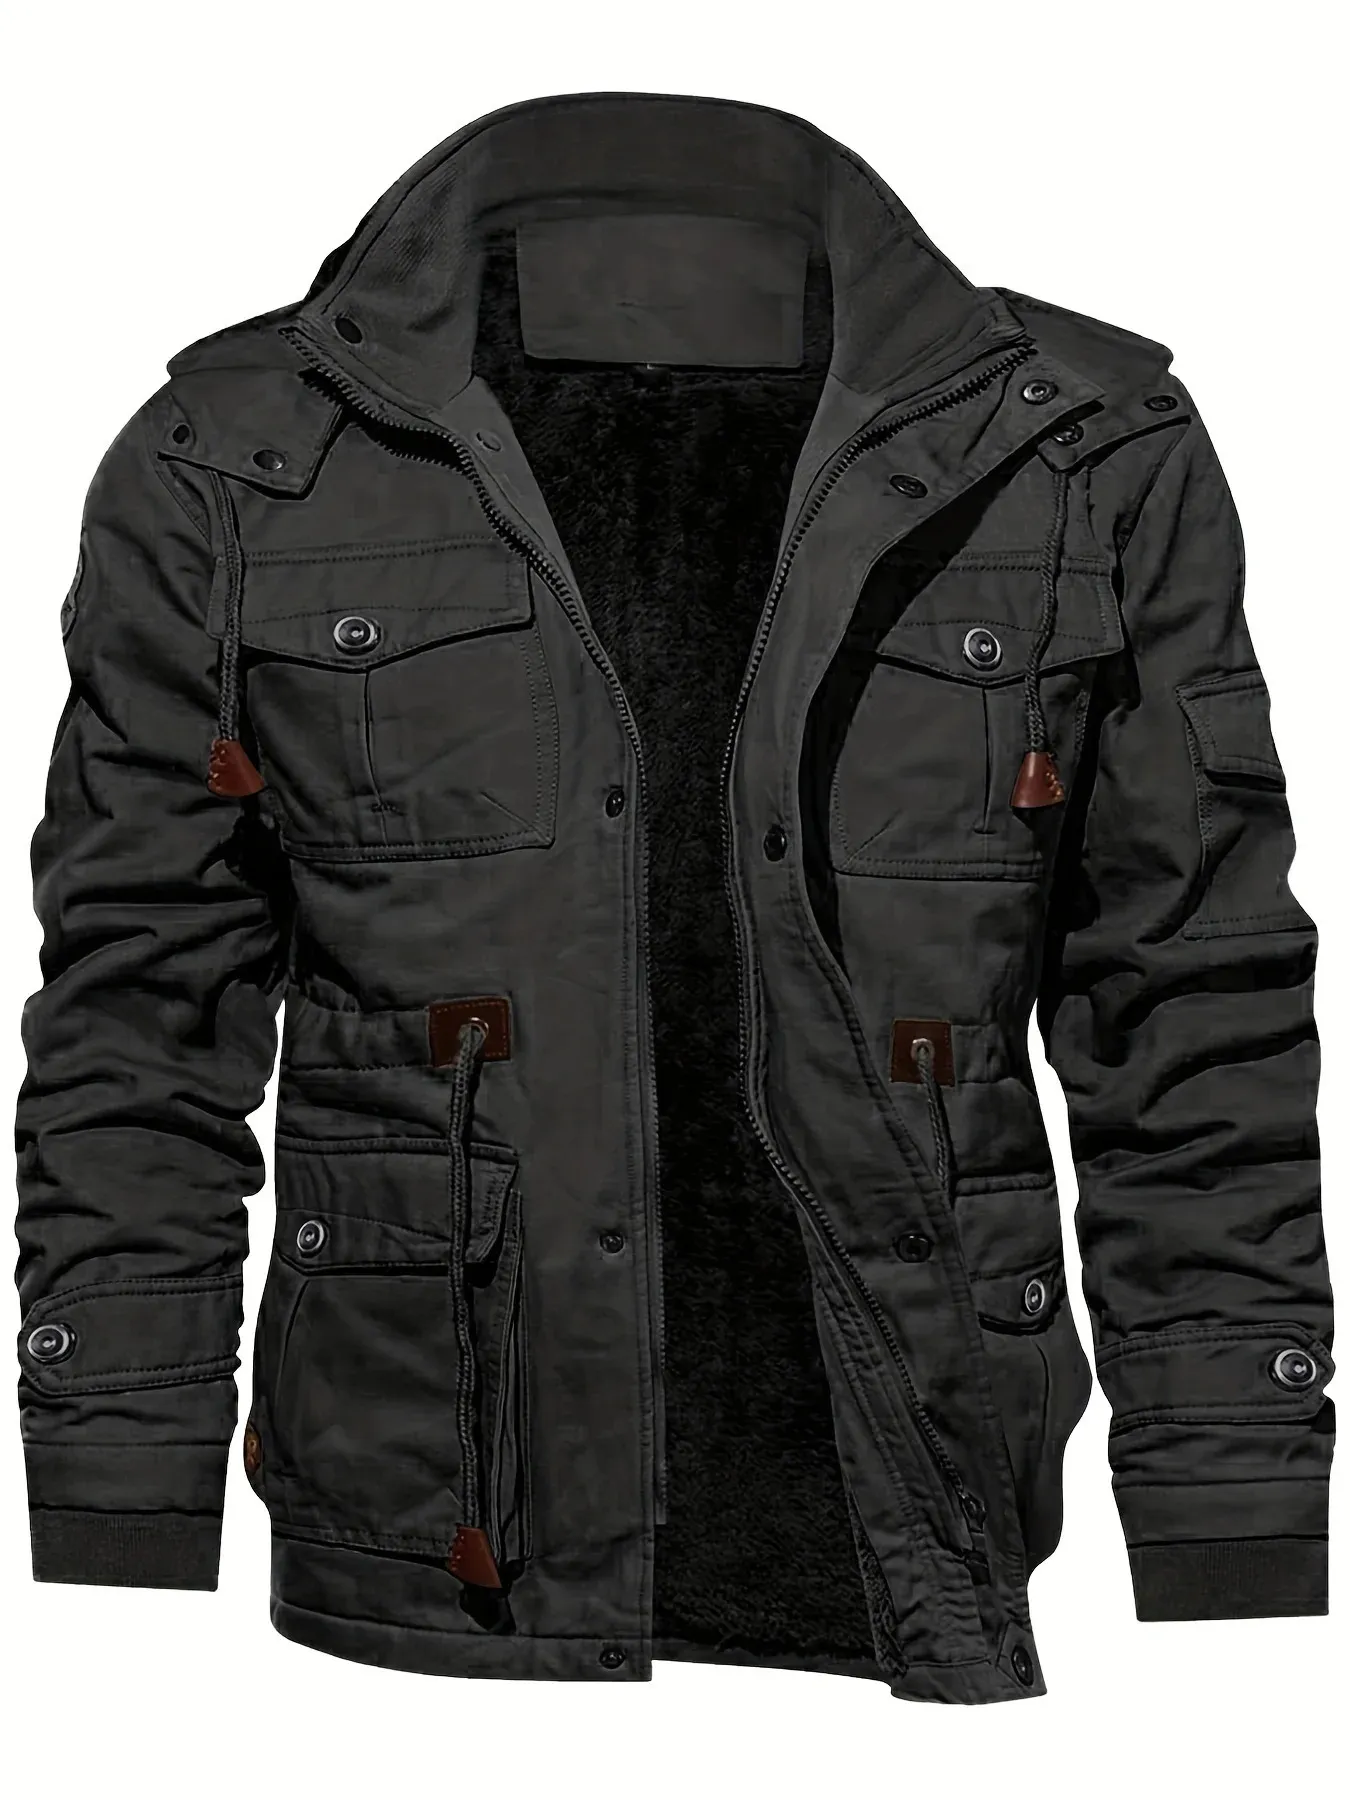 Erkek ceketler adam tarzı giyim erkekler moda kış ter gömlek kapşonlu motosiklet ceket aşağı hafif giysiler soğuk ağır 231017